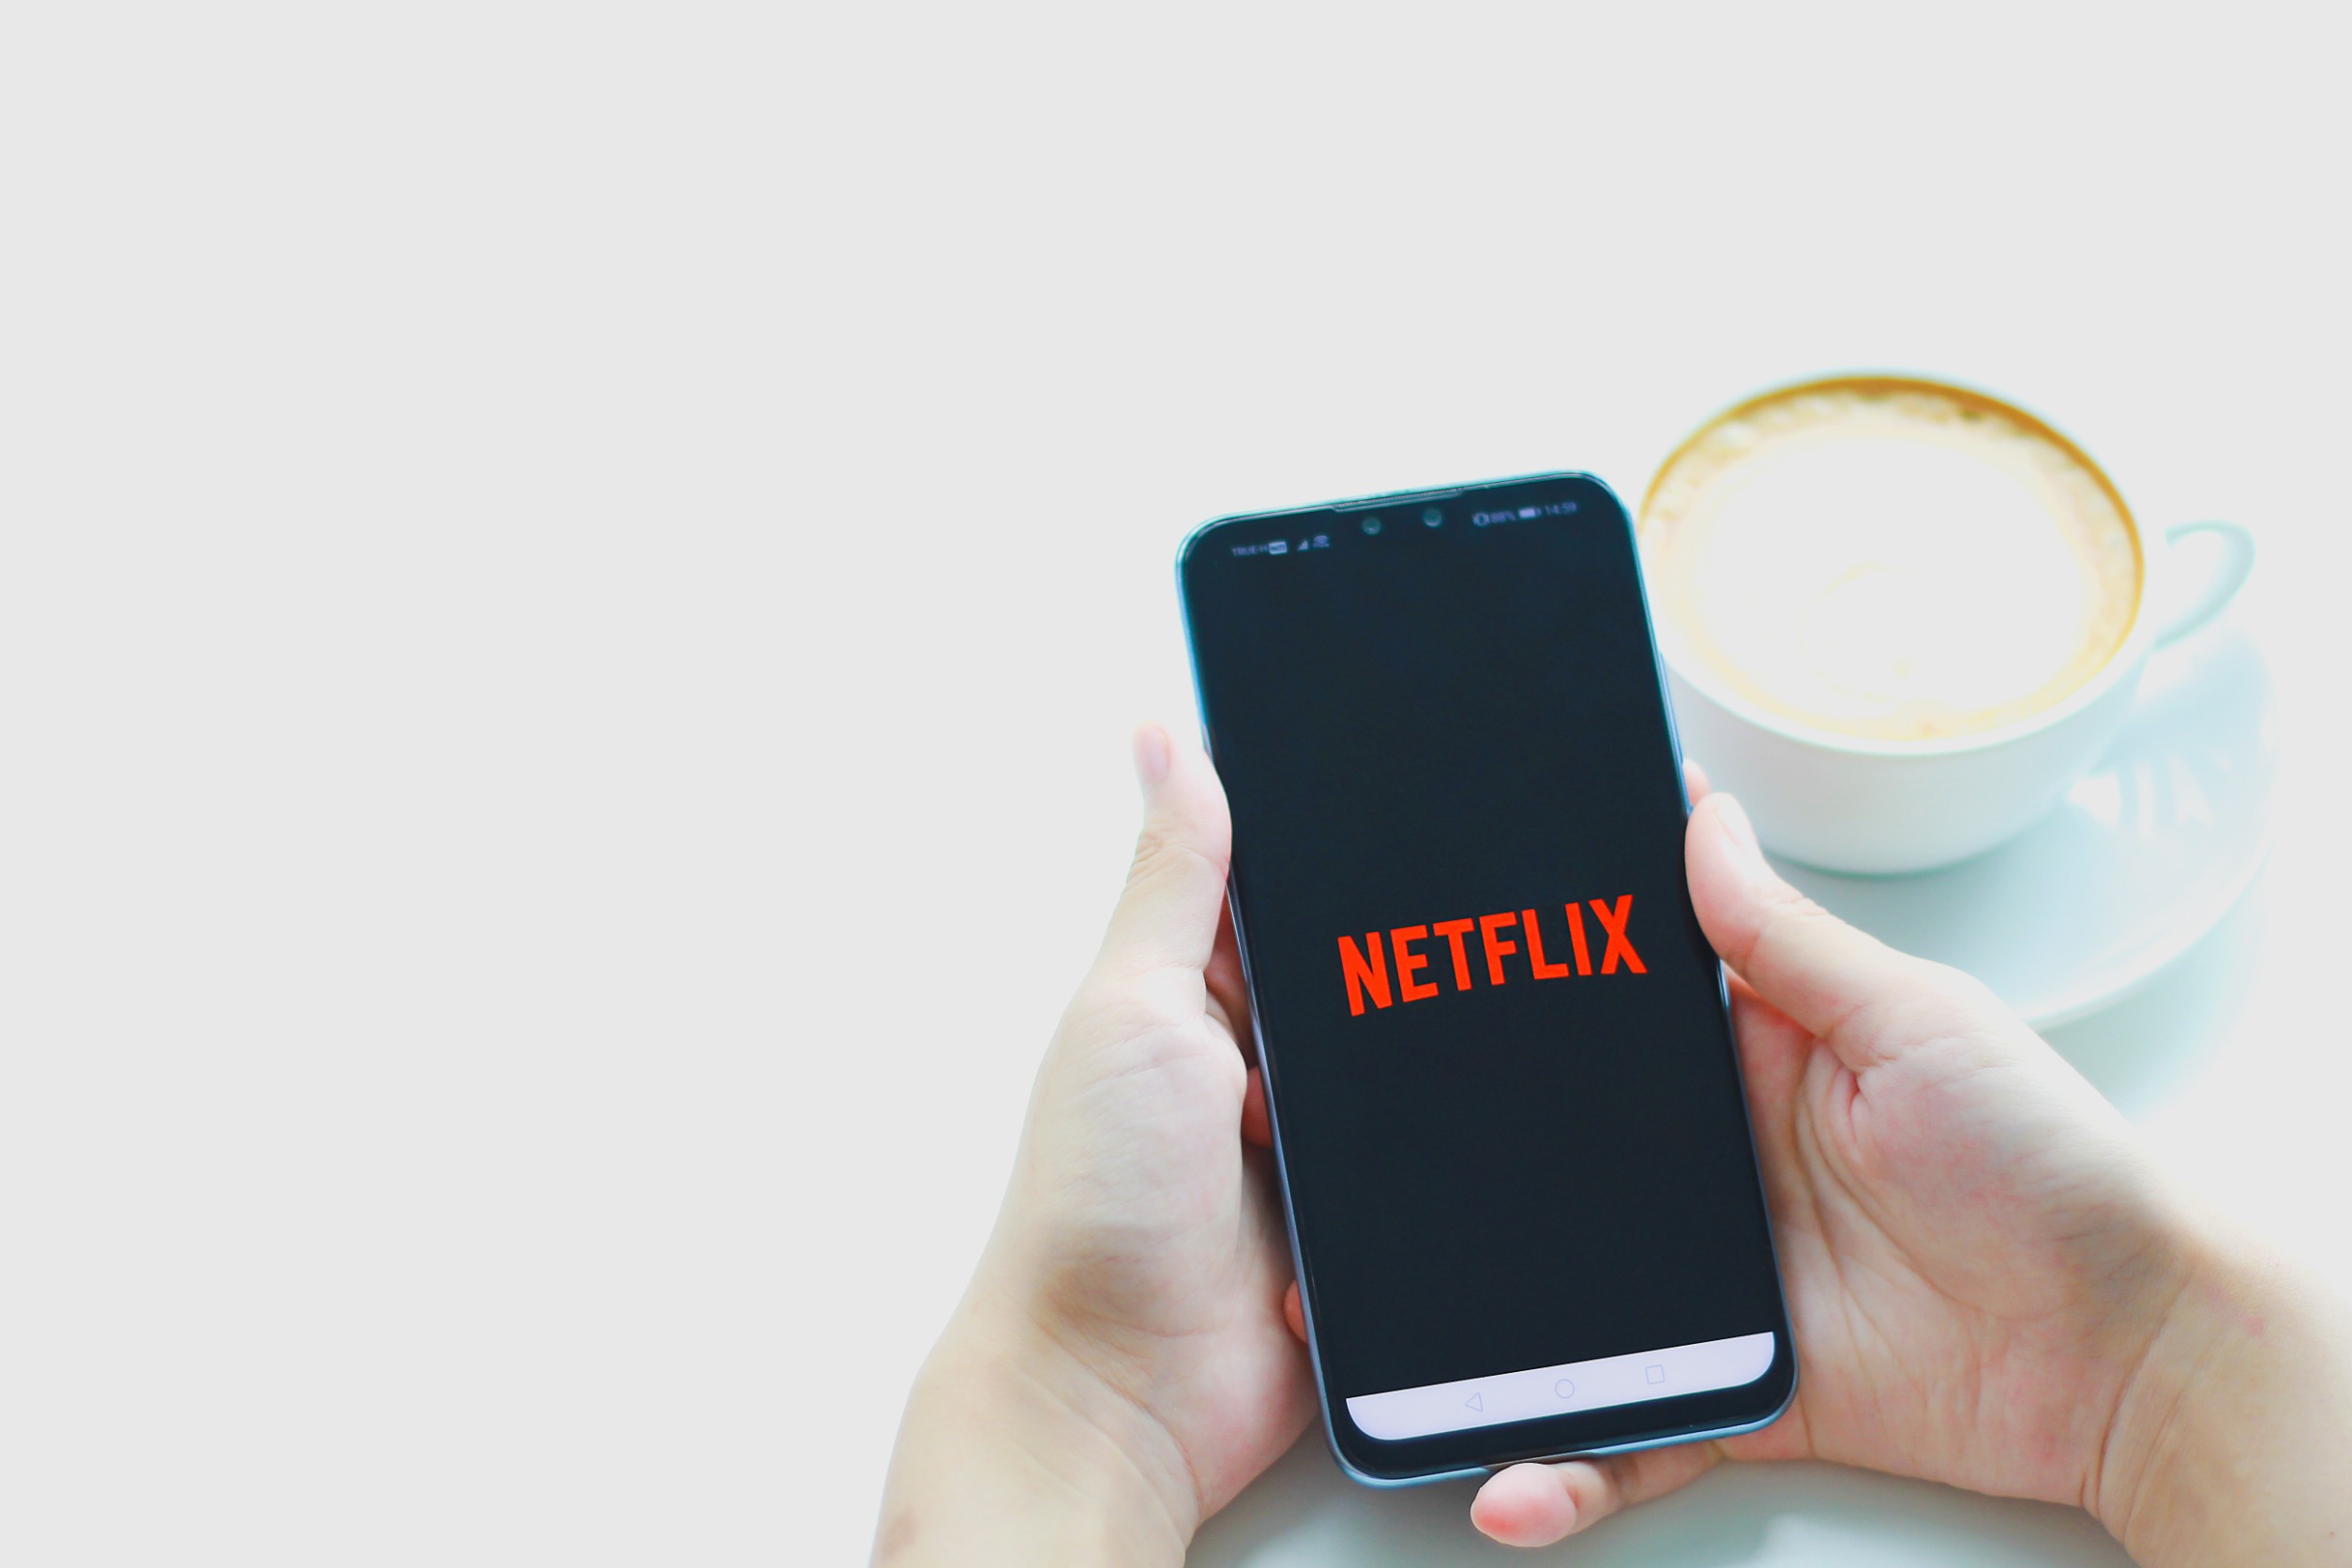 Osoba trzyma telefon Huawei, na którym wyświetla się logo Netflixa